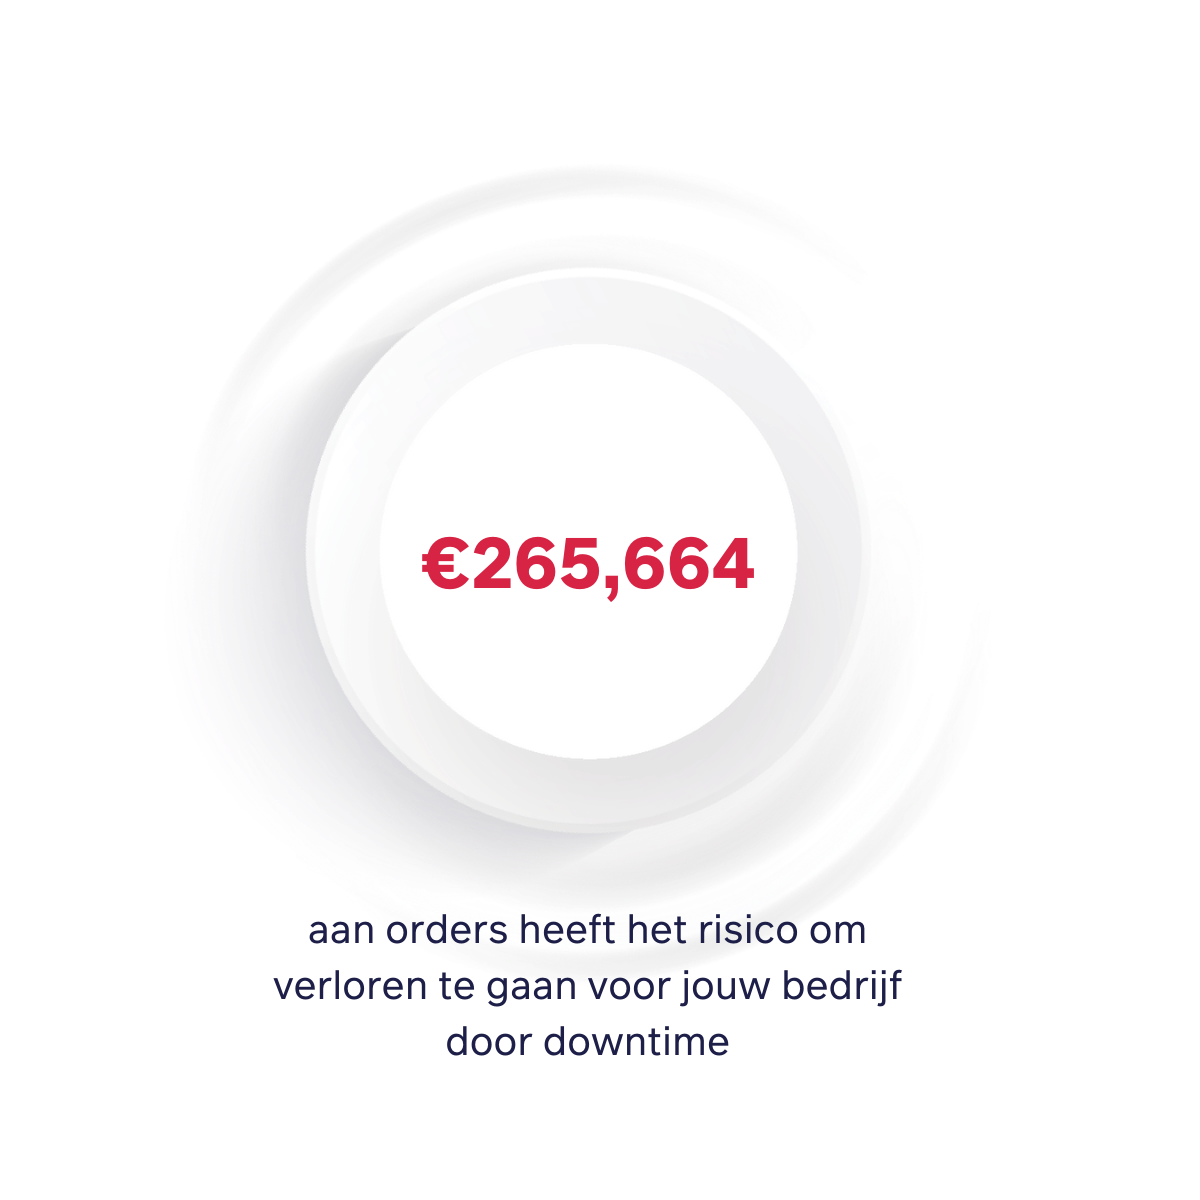 €265,664 aan orders heeft het risico om verloren te gaan voor jouw bedrijf door downtime